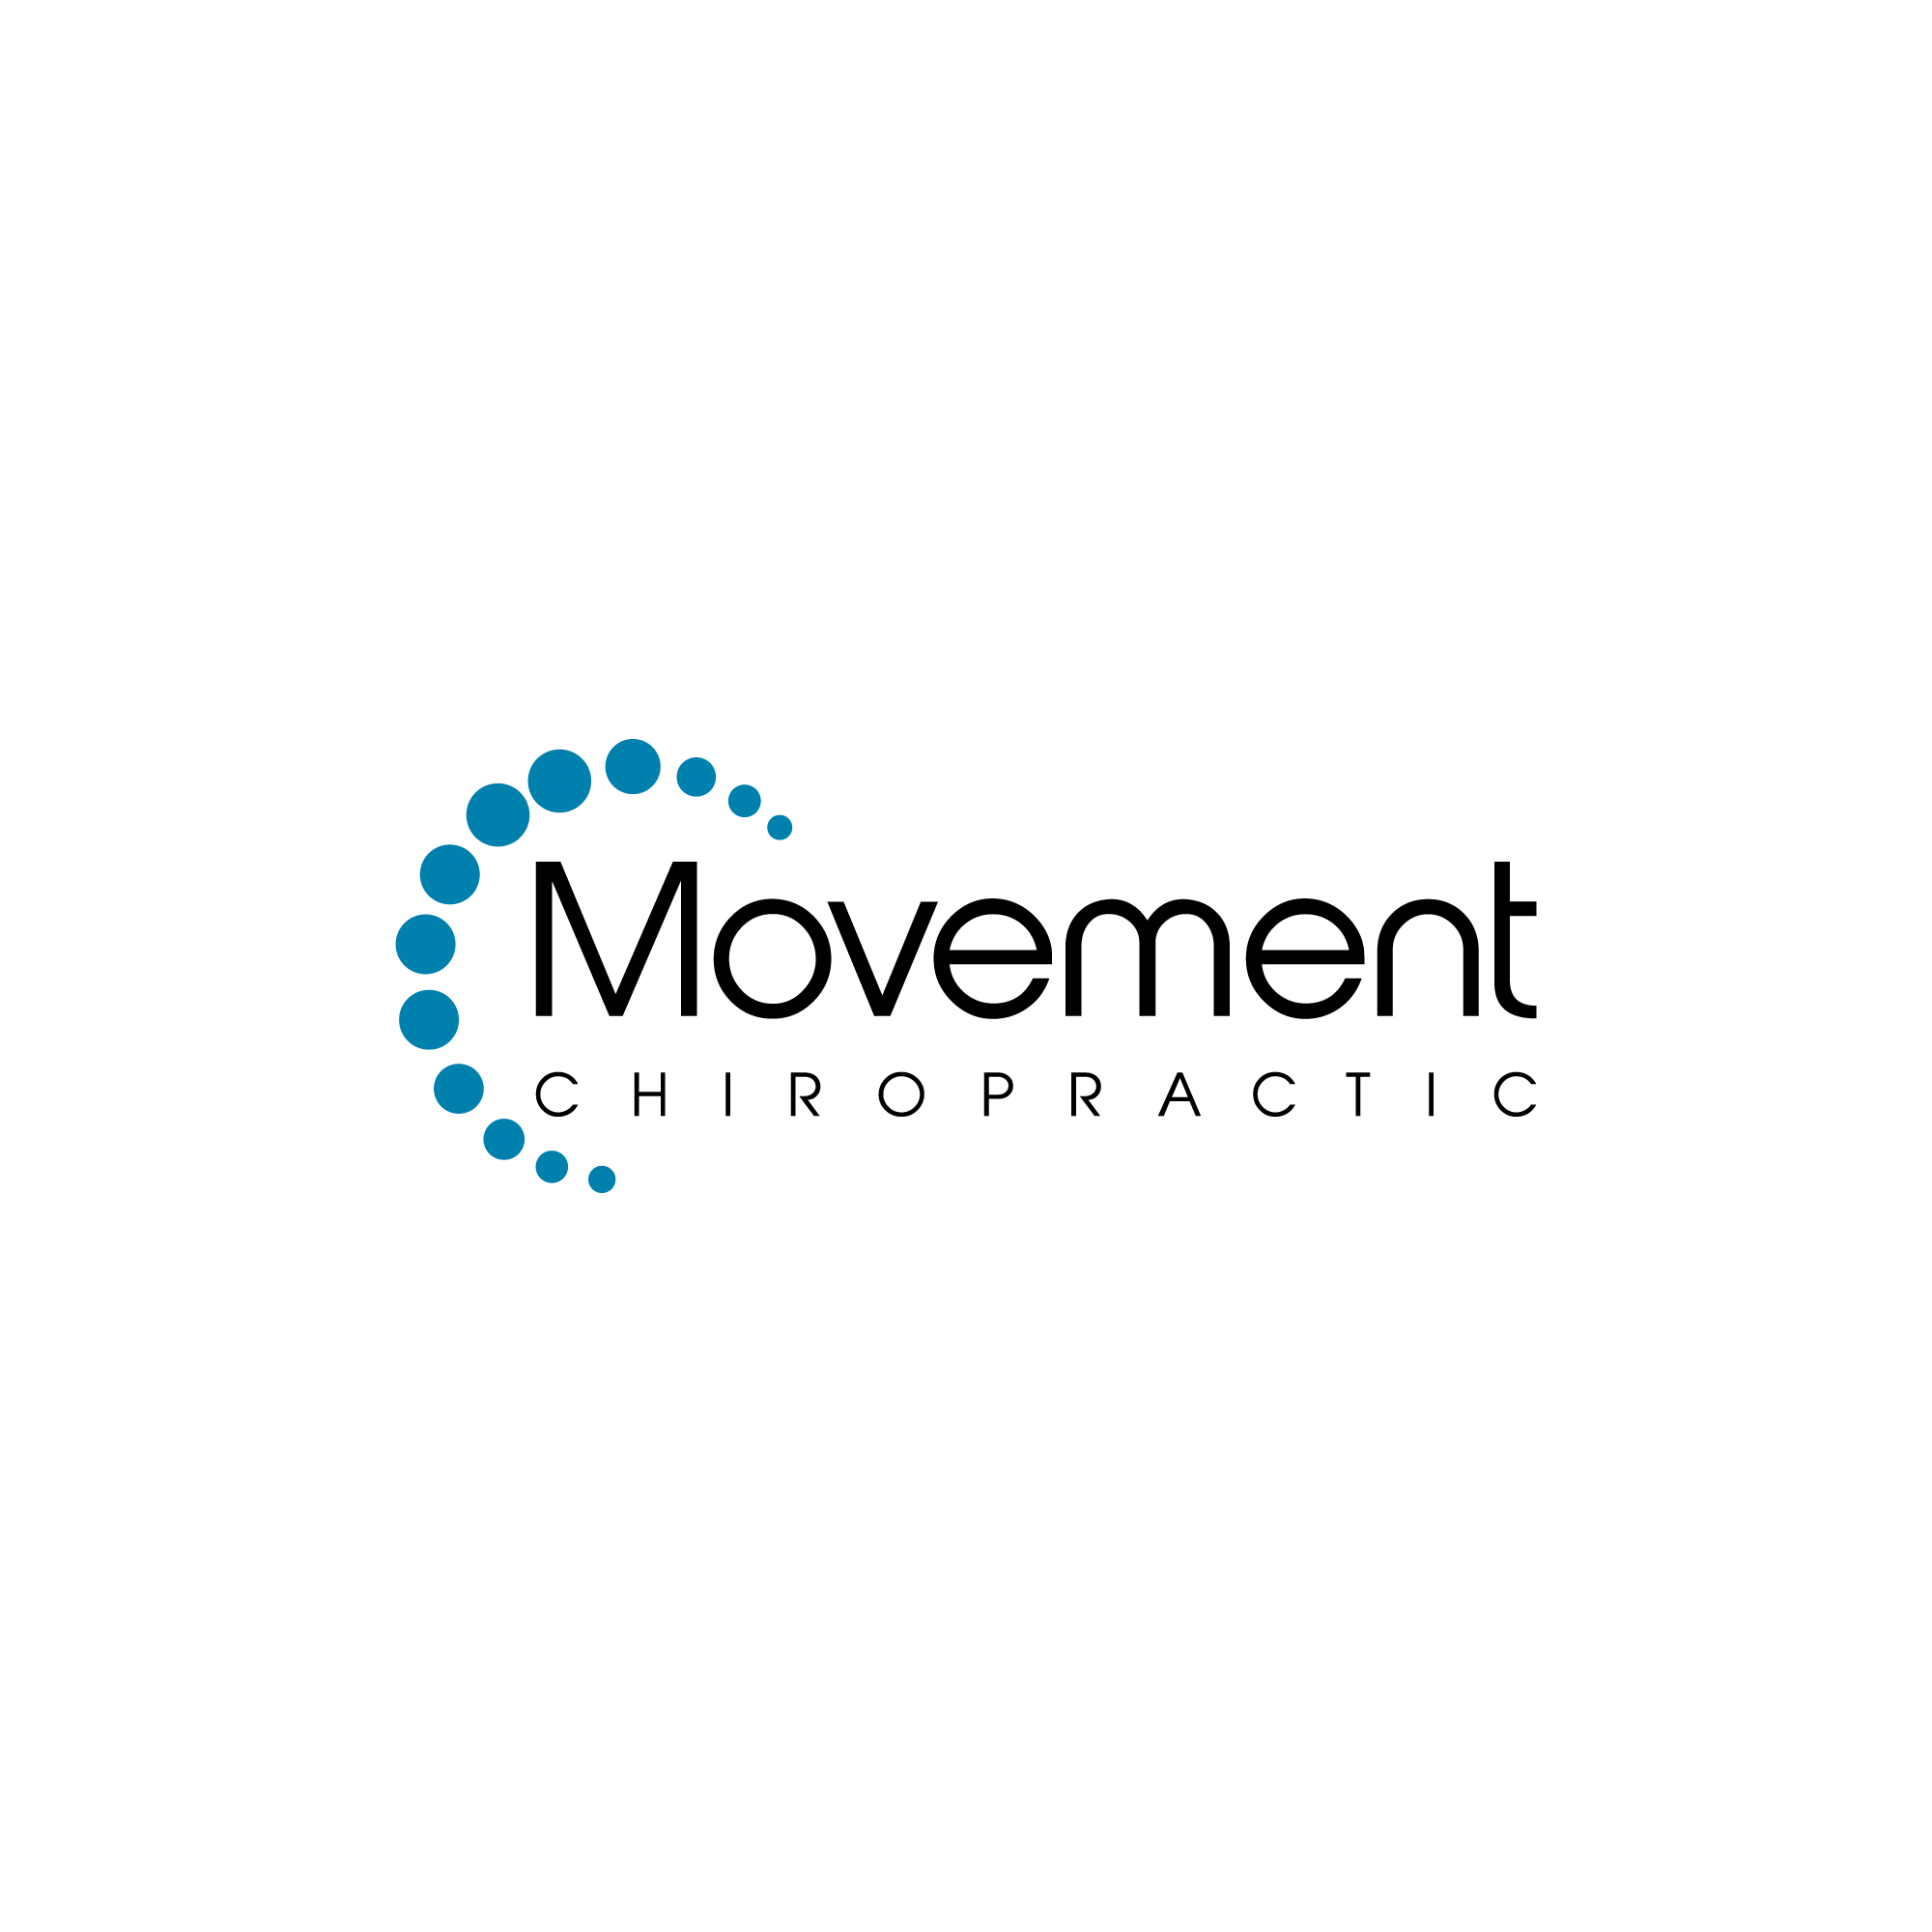 Movement Chiropractic